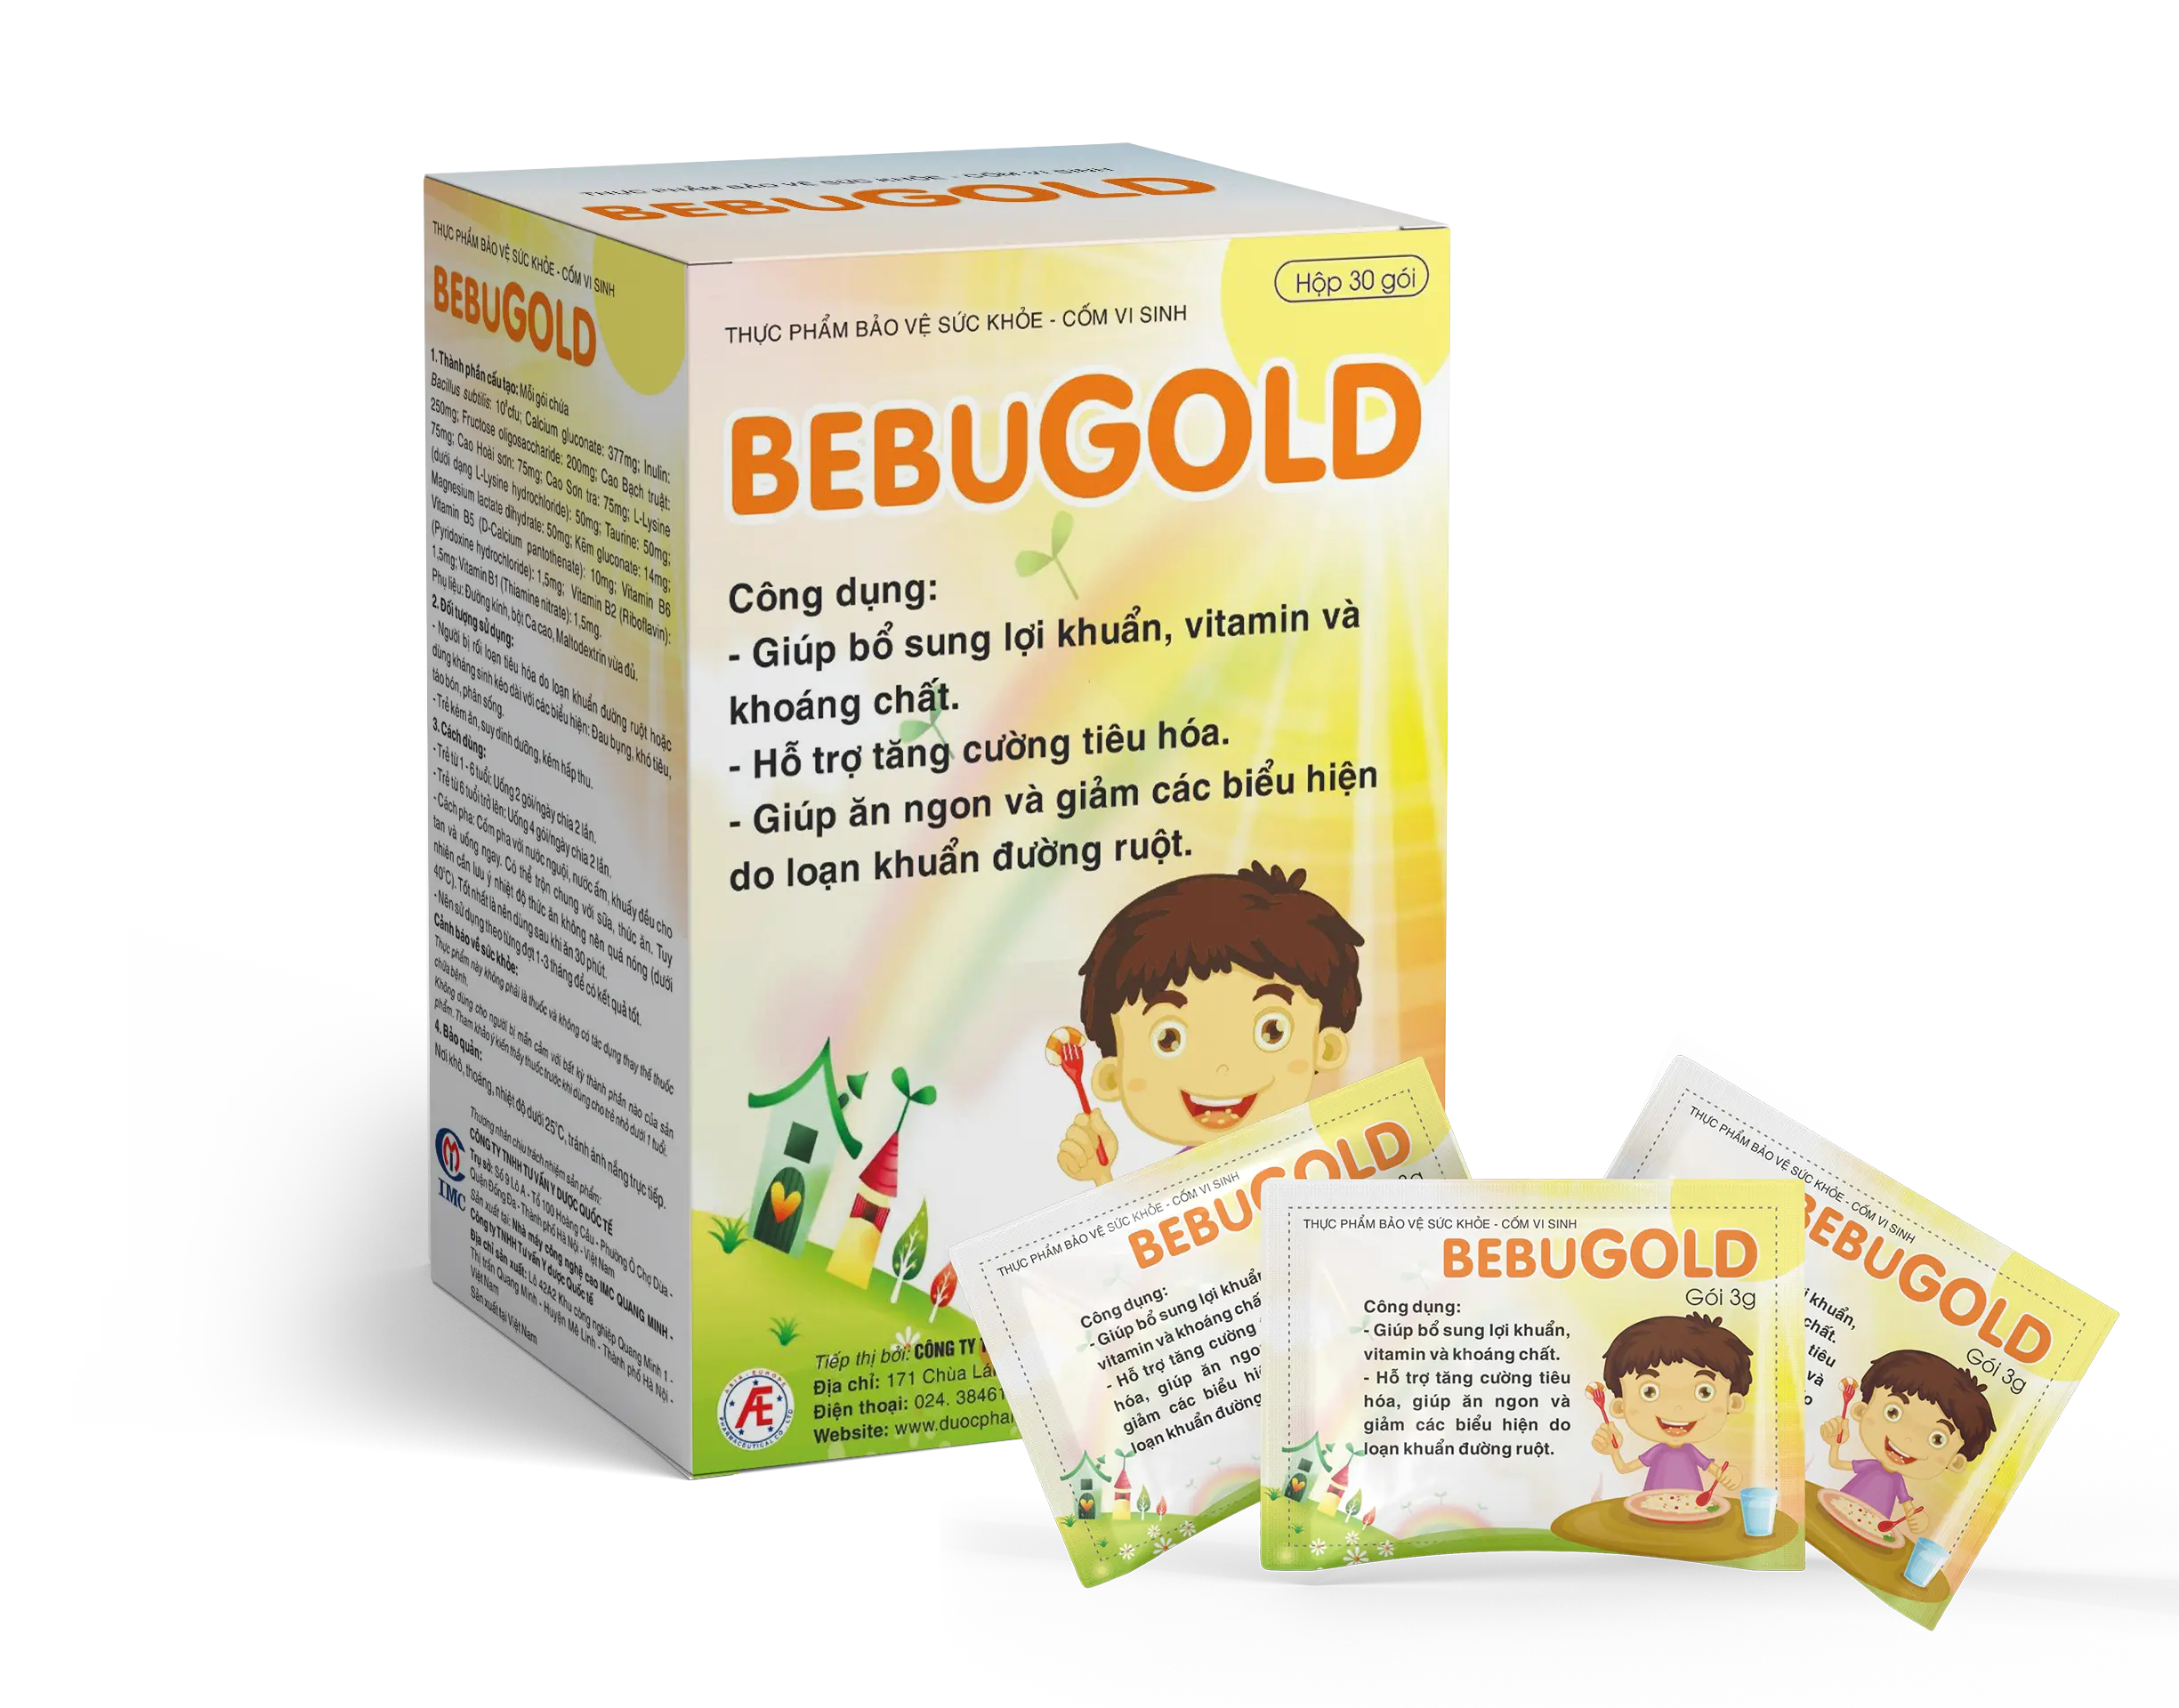 Cốm vi sinh Bebugold - Giải pháp giúp hệ tiêu hóa khỏe mạnh hiệu quả, an toàn.webp